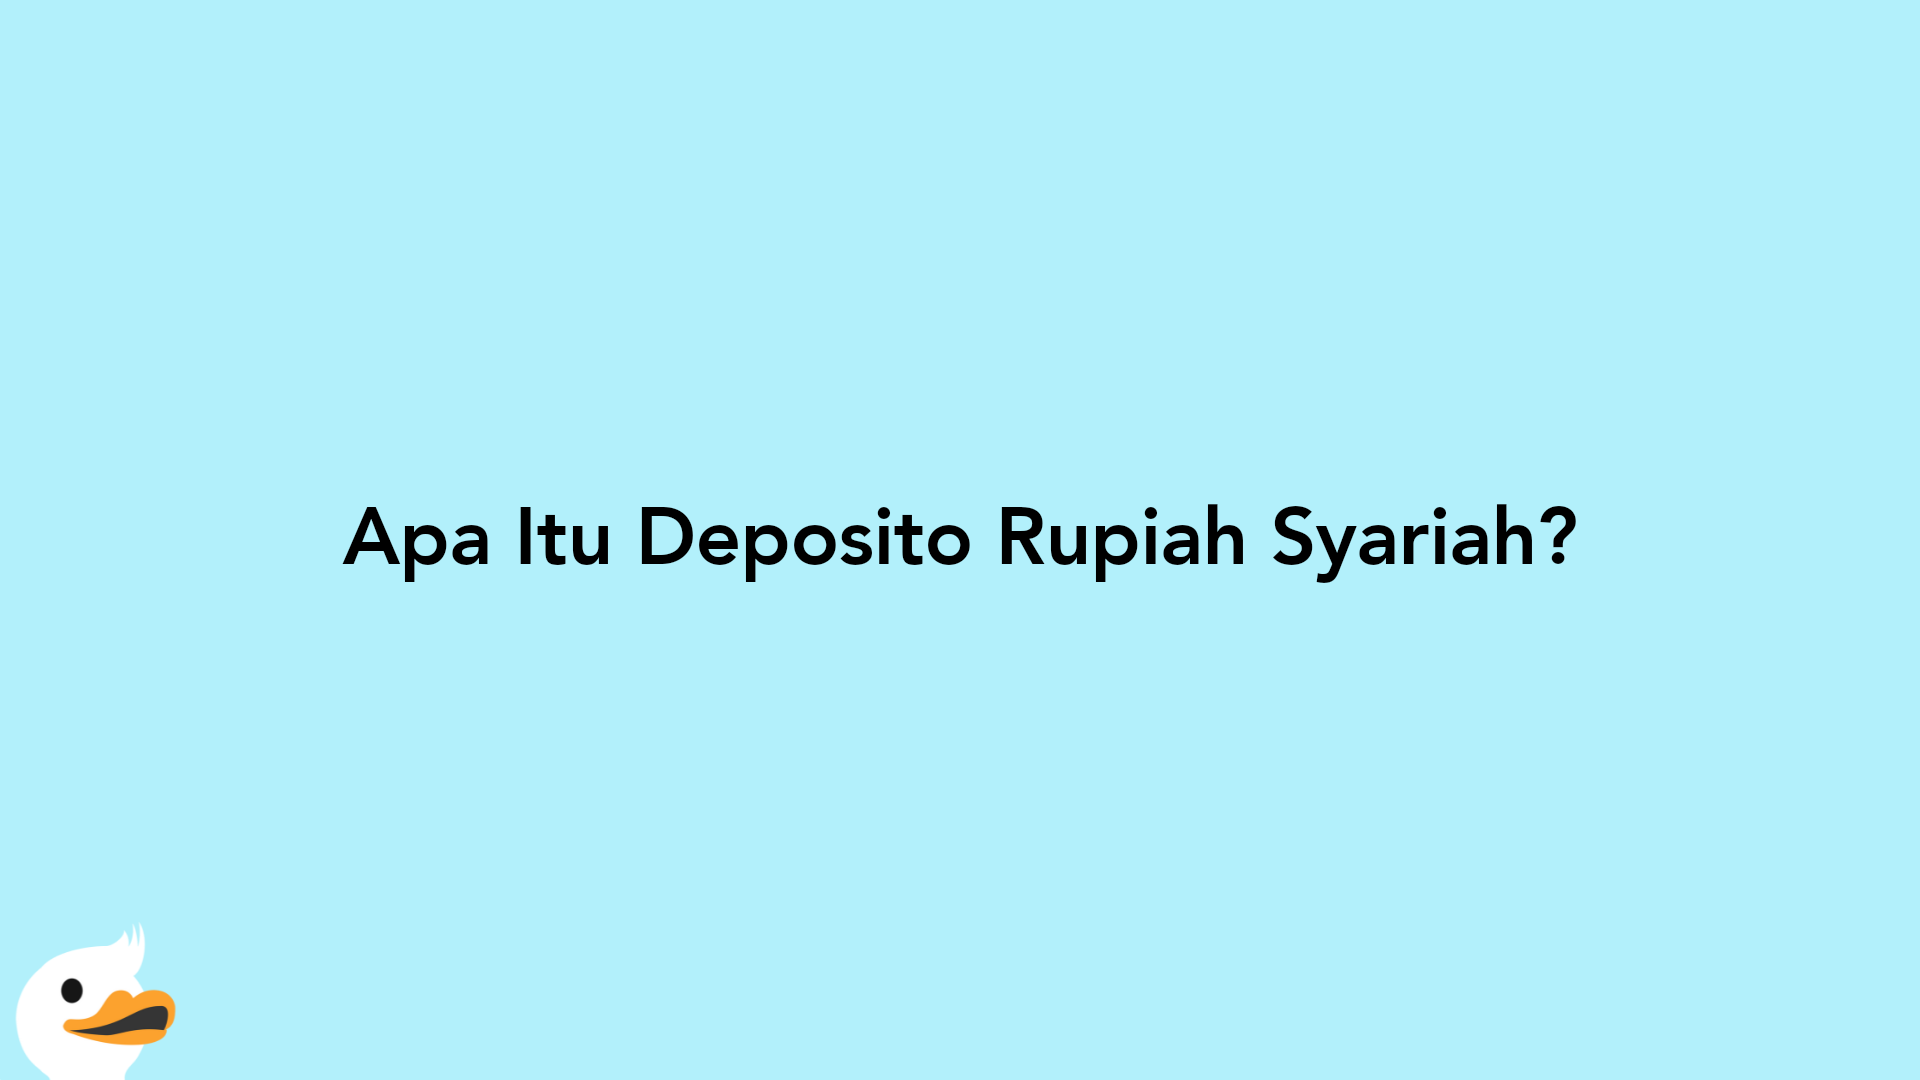 Apa Itu Deposito Rupiah Syariah?